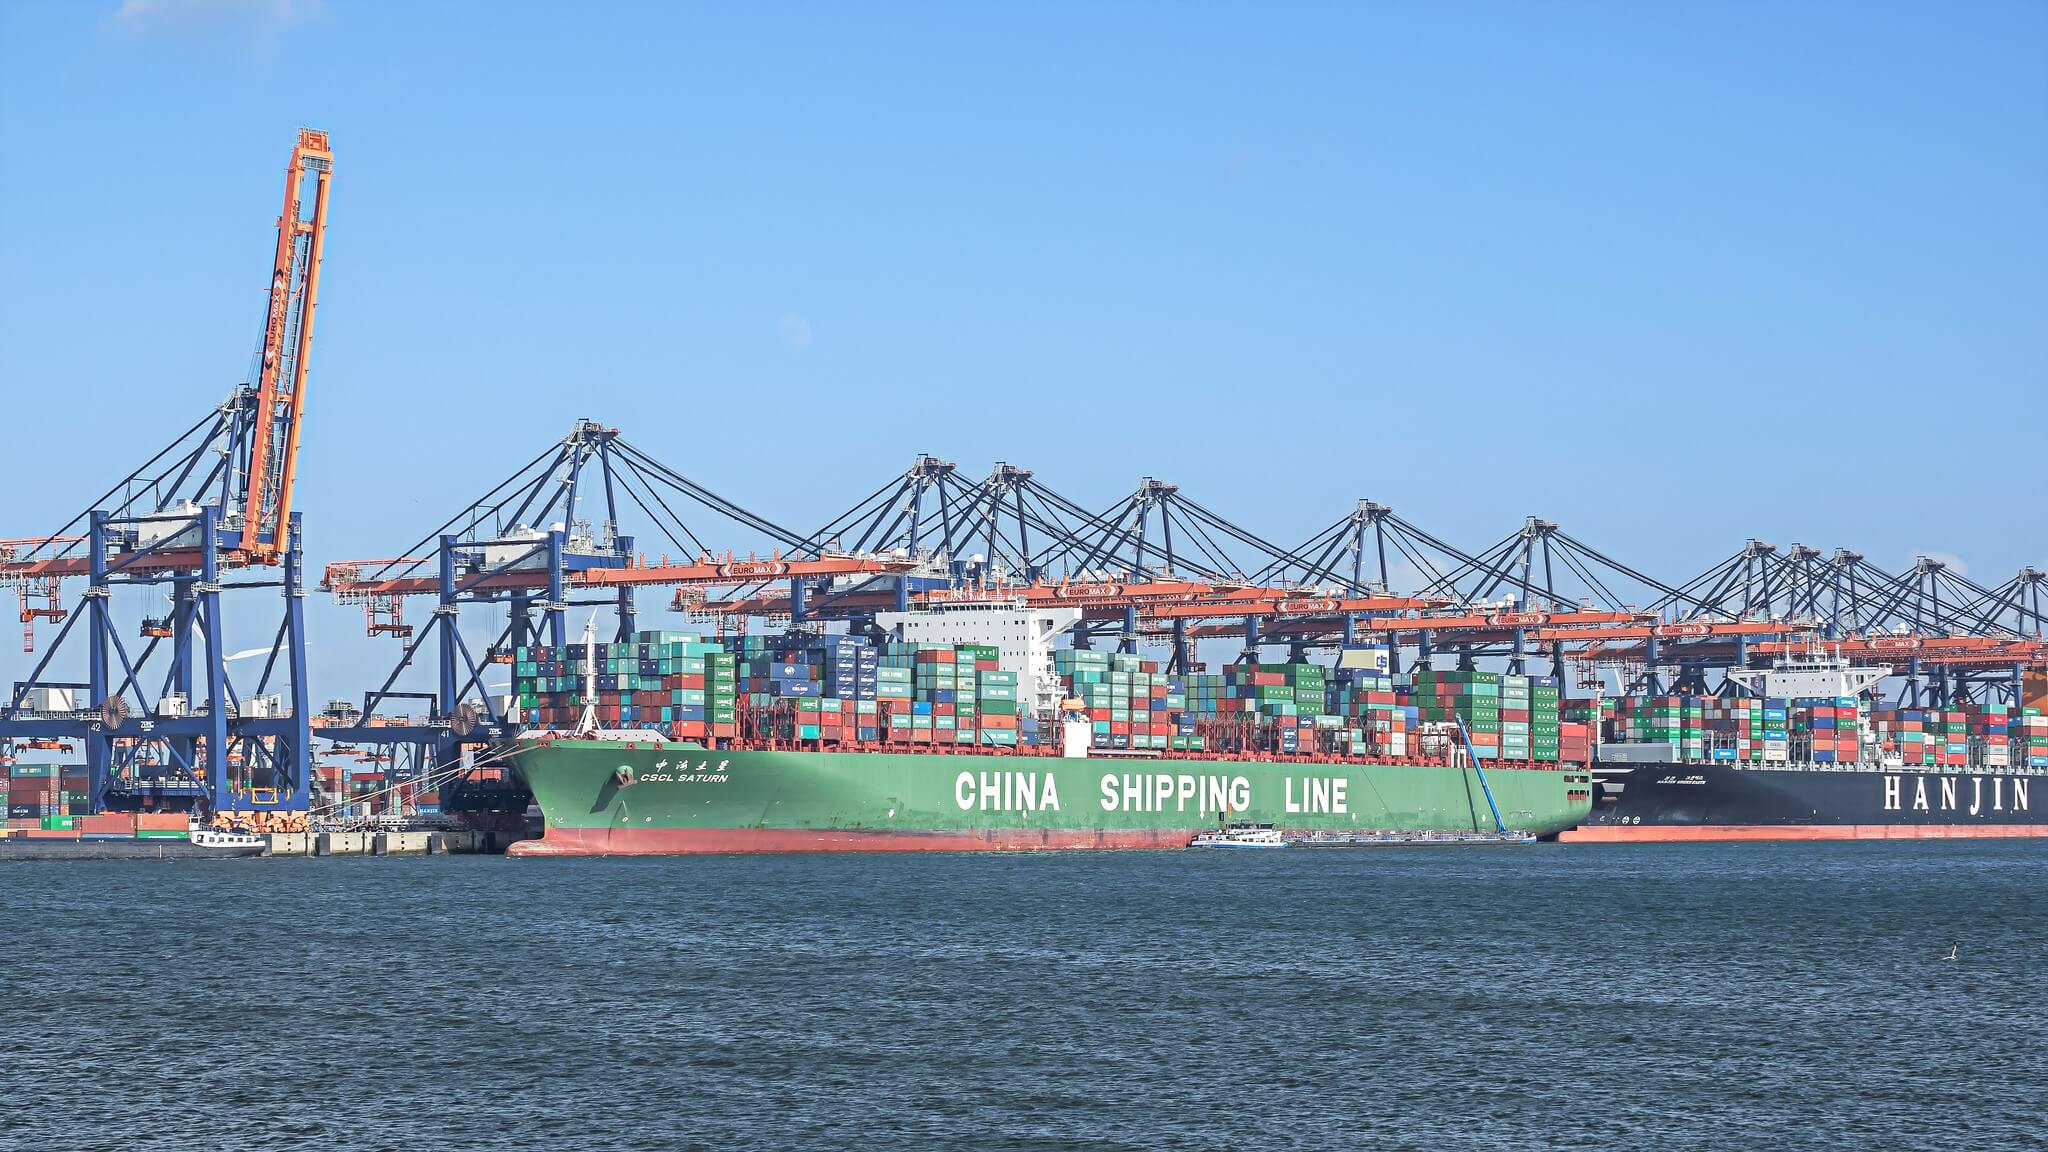 DeWijk-Chinees containerschip in de haven van Rotterdam in 2015. Frans Berkelaar - Flickr